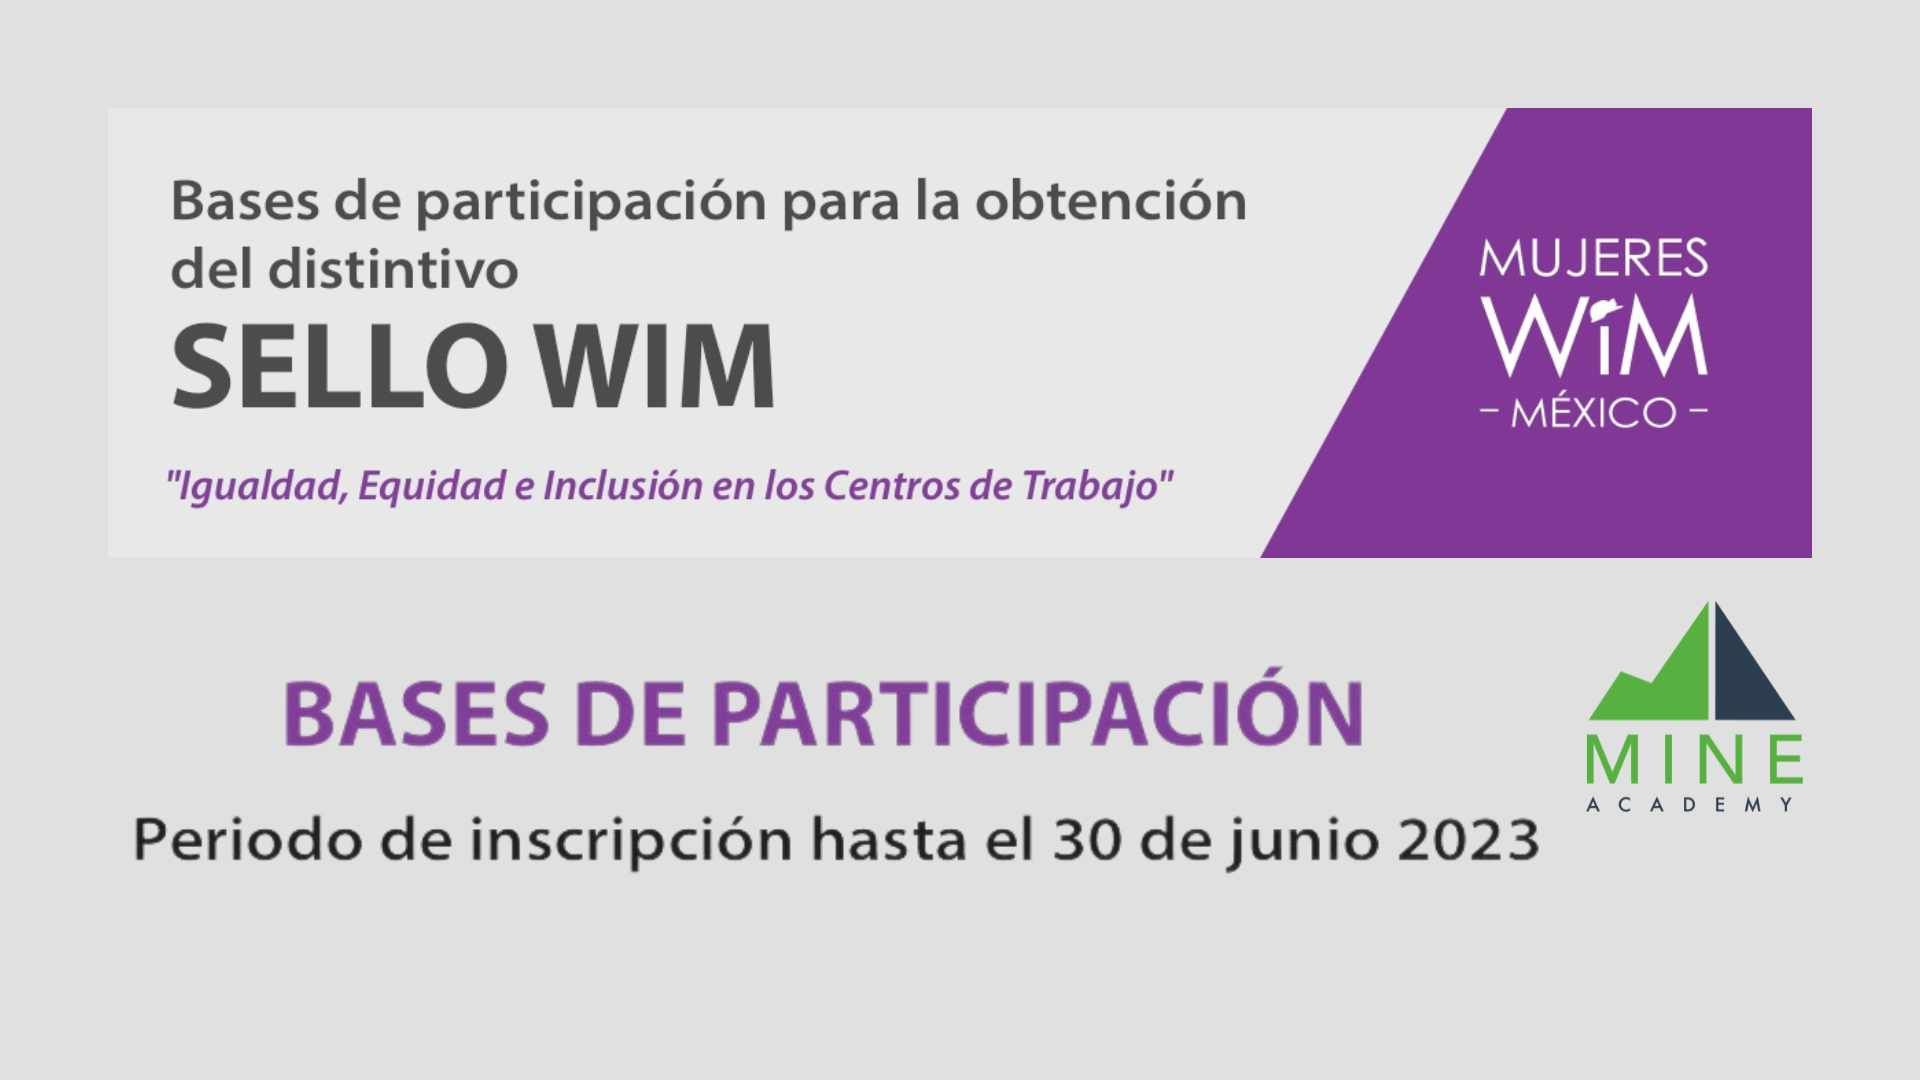 Bases de participación para la obtención del distintivo "Sello WiM"